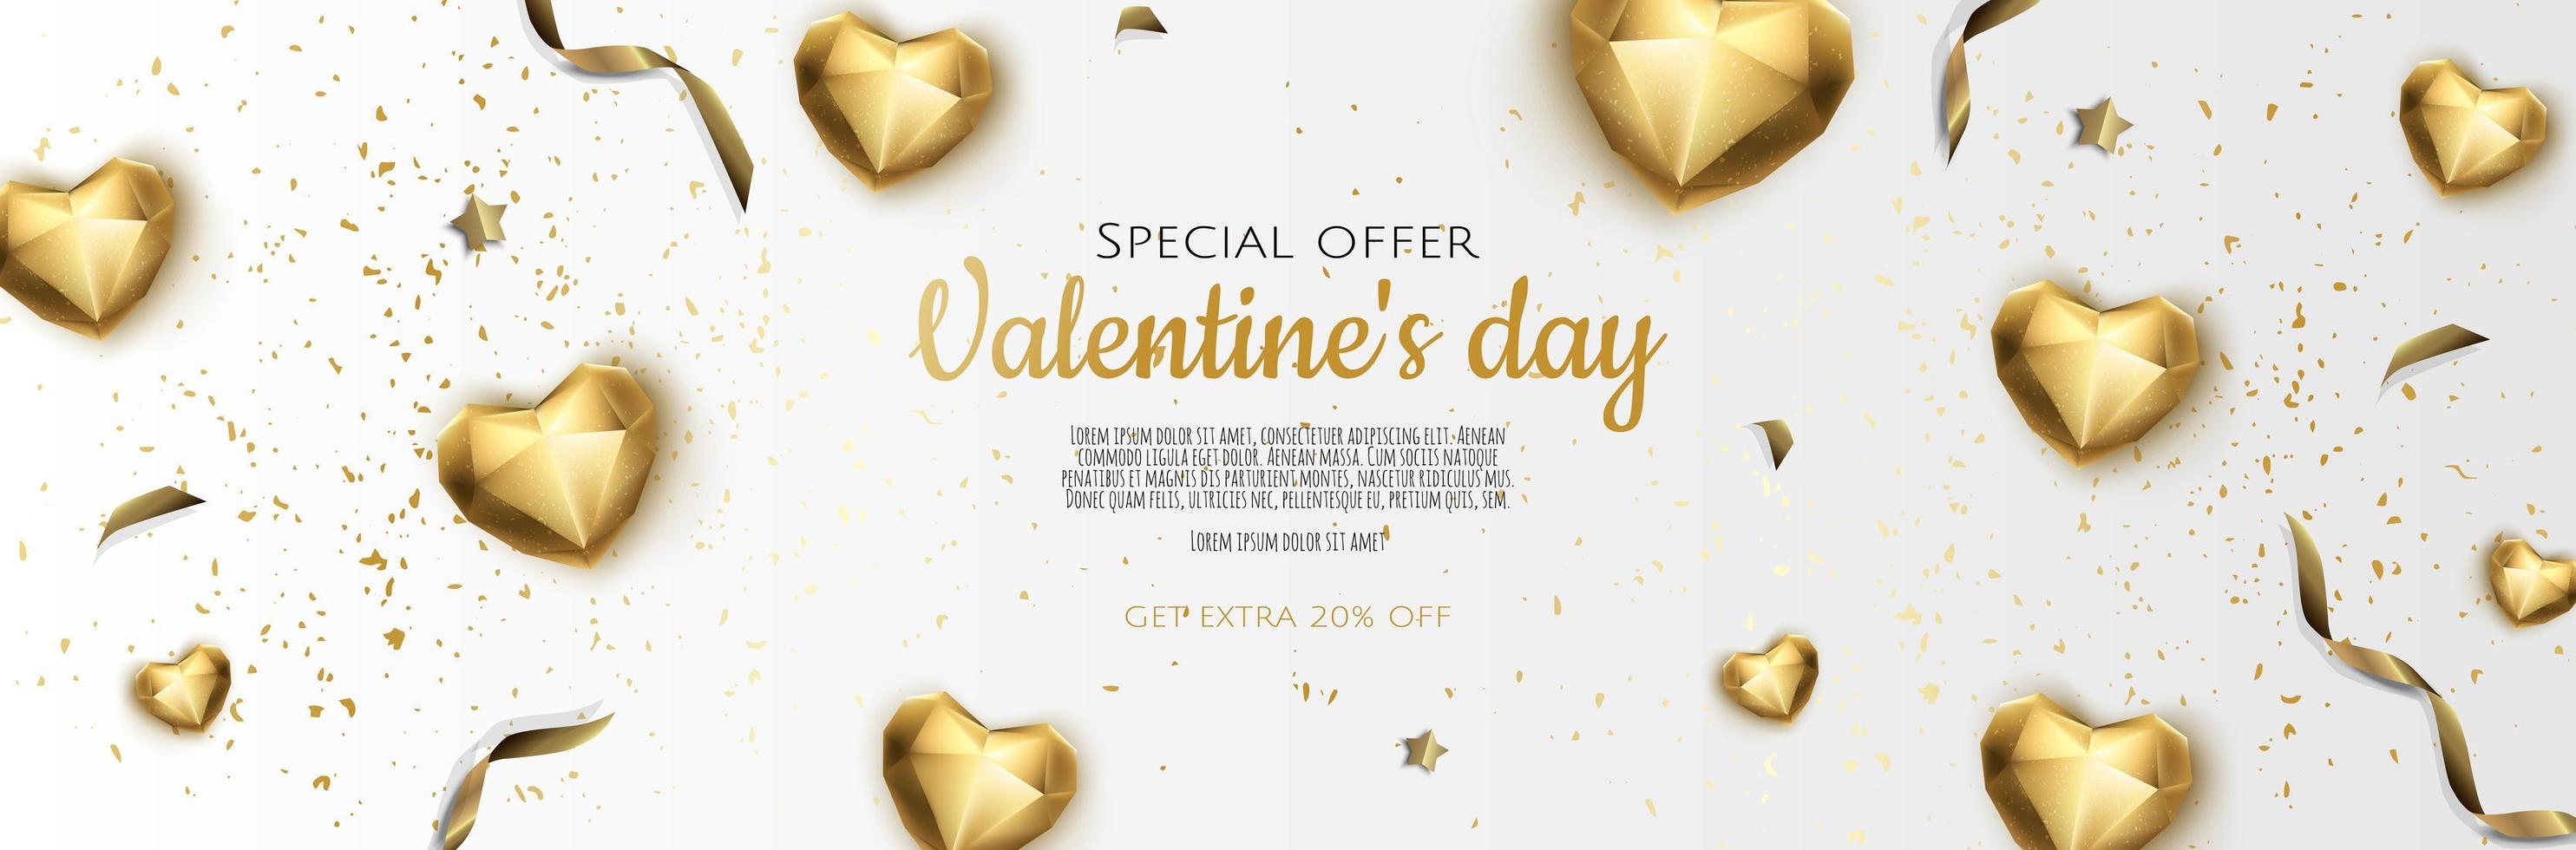 banner creativo romántico feliz día de san valentín, encabezado horizontal para el sitio web. corazón 3d realista de fondo con confeti dorado. vector